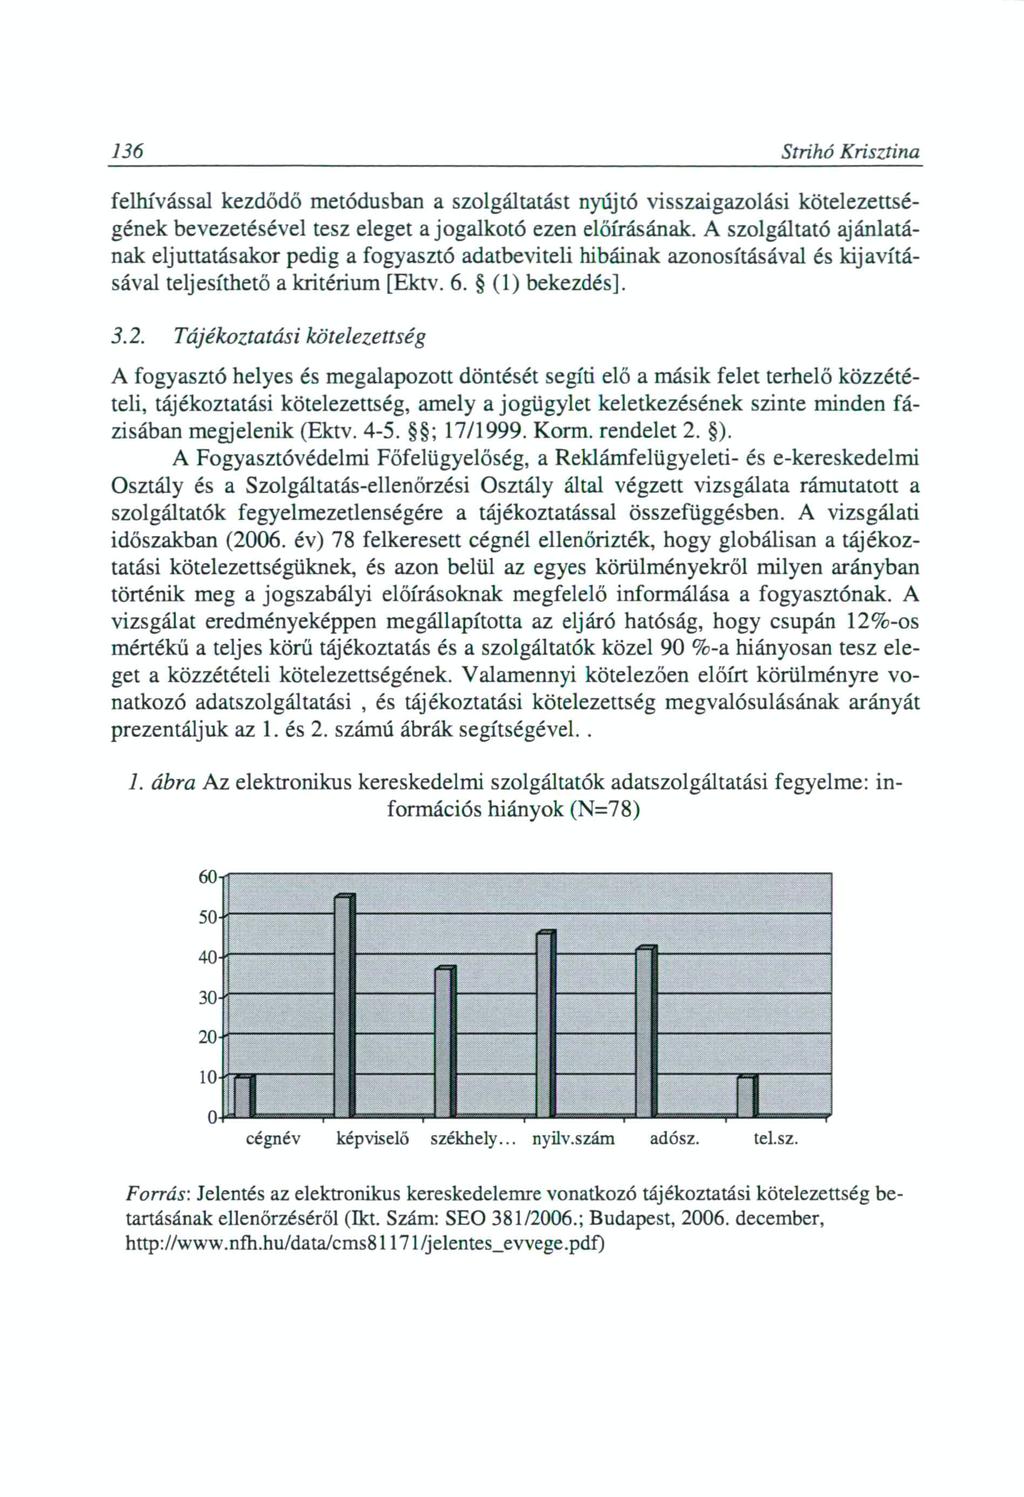 136 Strihó Krisztina felhívással kezdődő metódusban a szolgáltatást nyújtó visszaigazolási kötelezettségének bevezetésével tesz eleget a j o g a l k o t ó ezen előírásának.